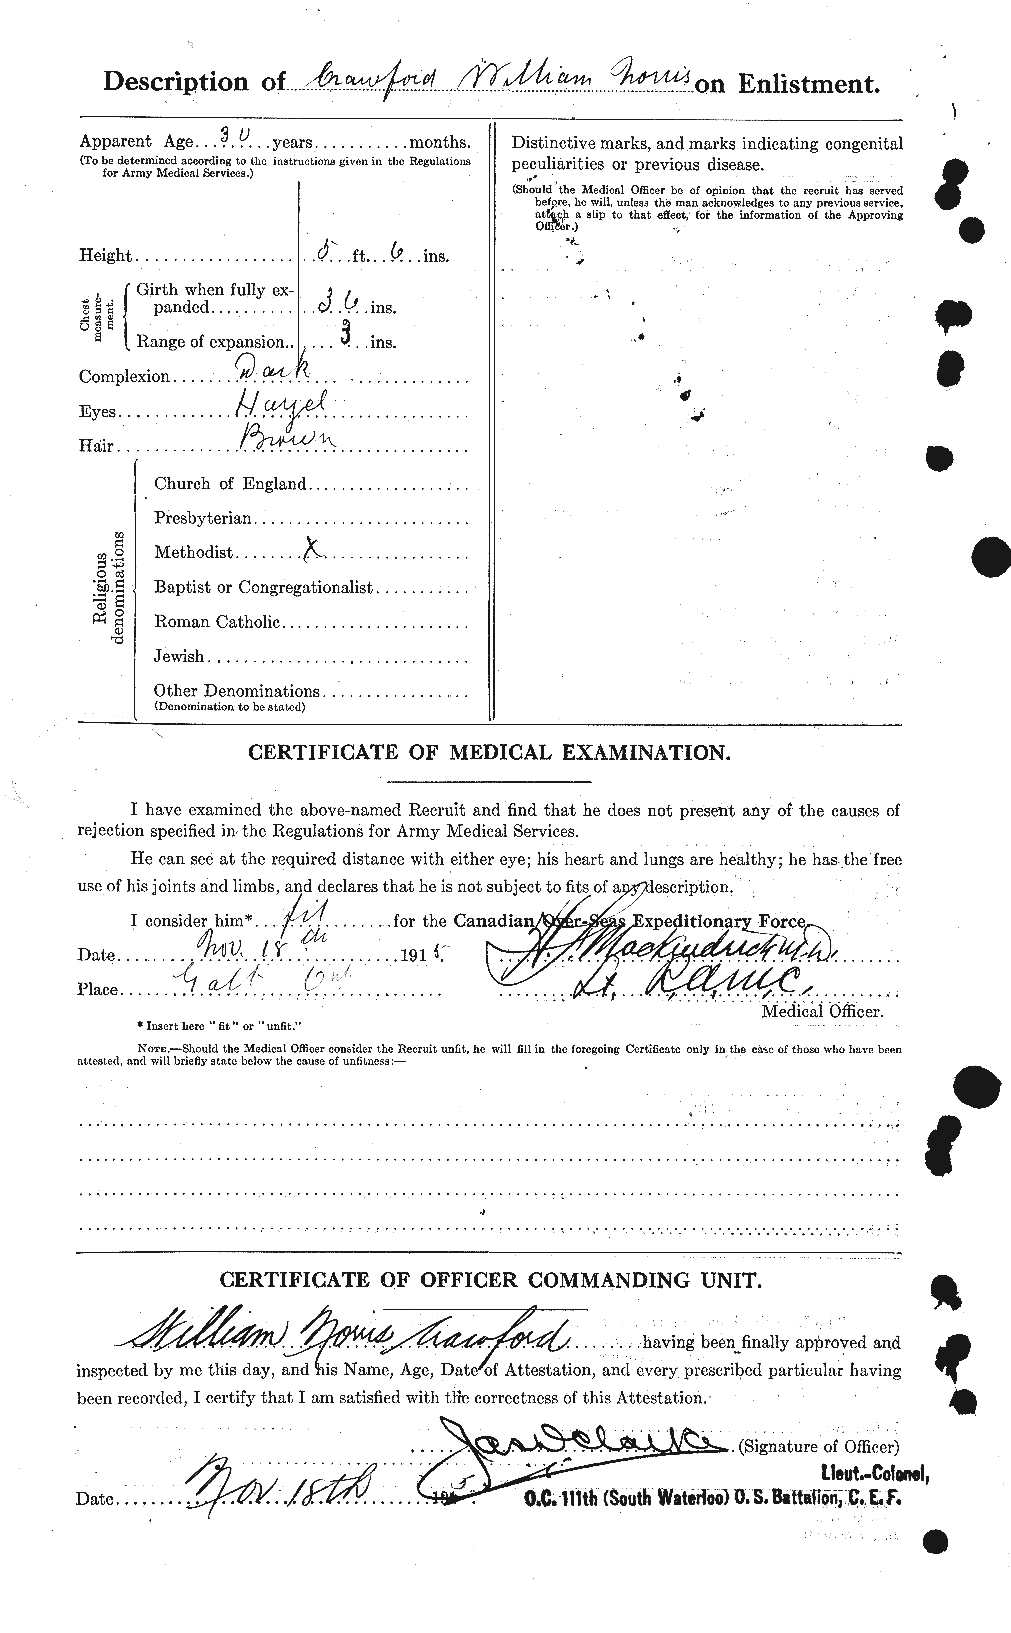 Dossiers du Personnel de la Première Guerre mondiale - CEC 060689b